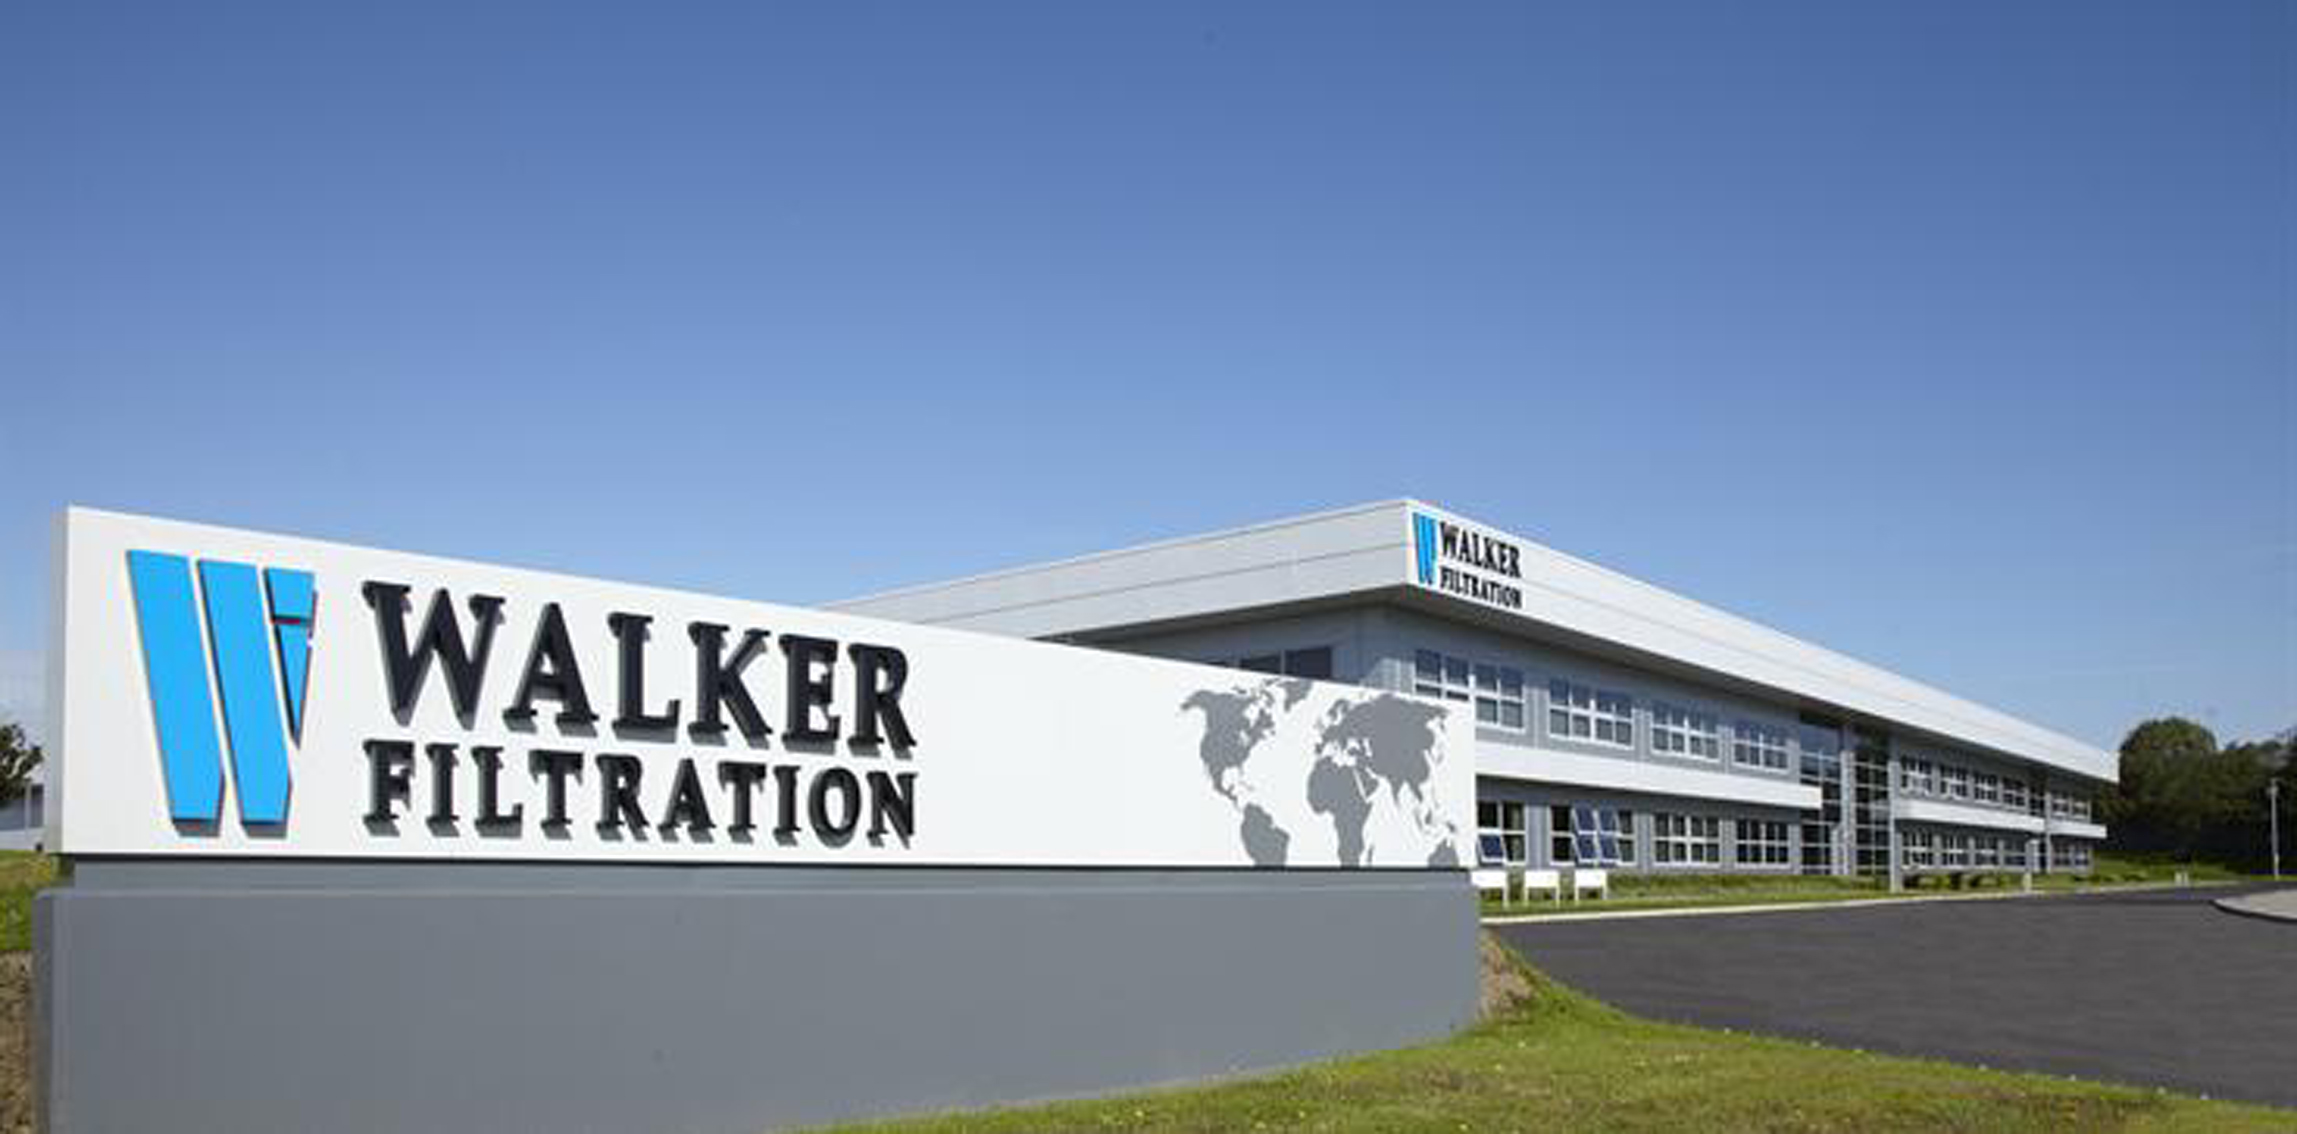 Walker Filtration's headquarters in Washington, near Newcastle, UK.